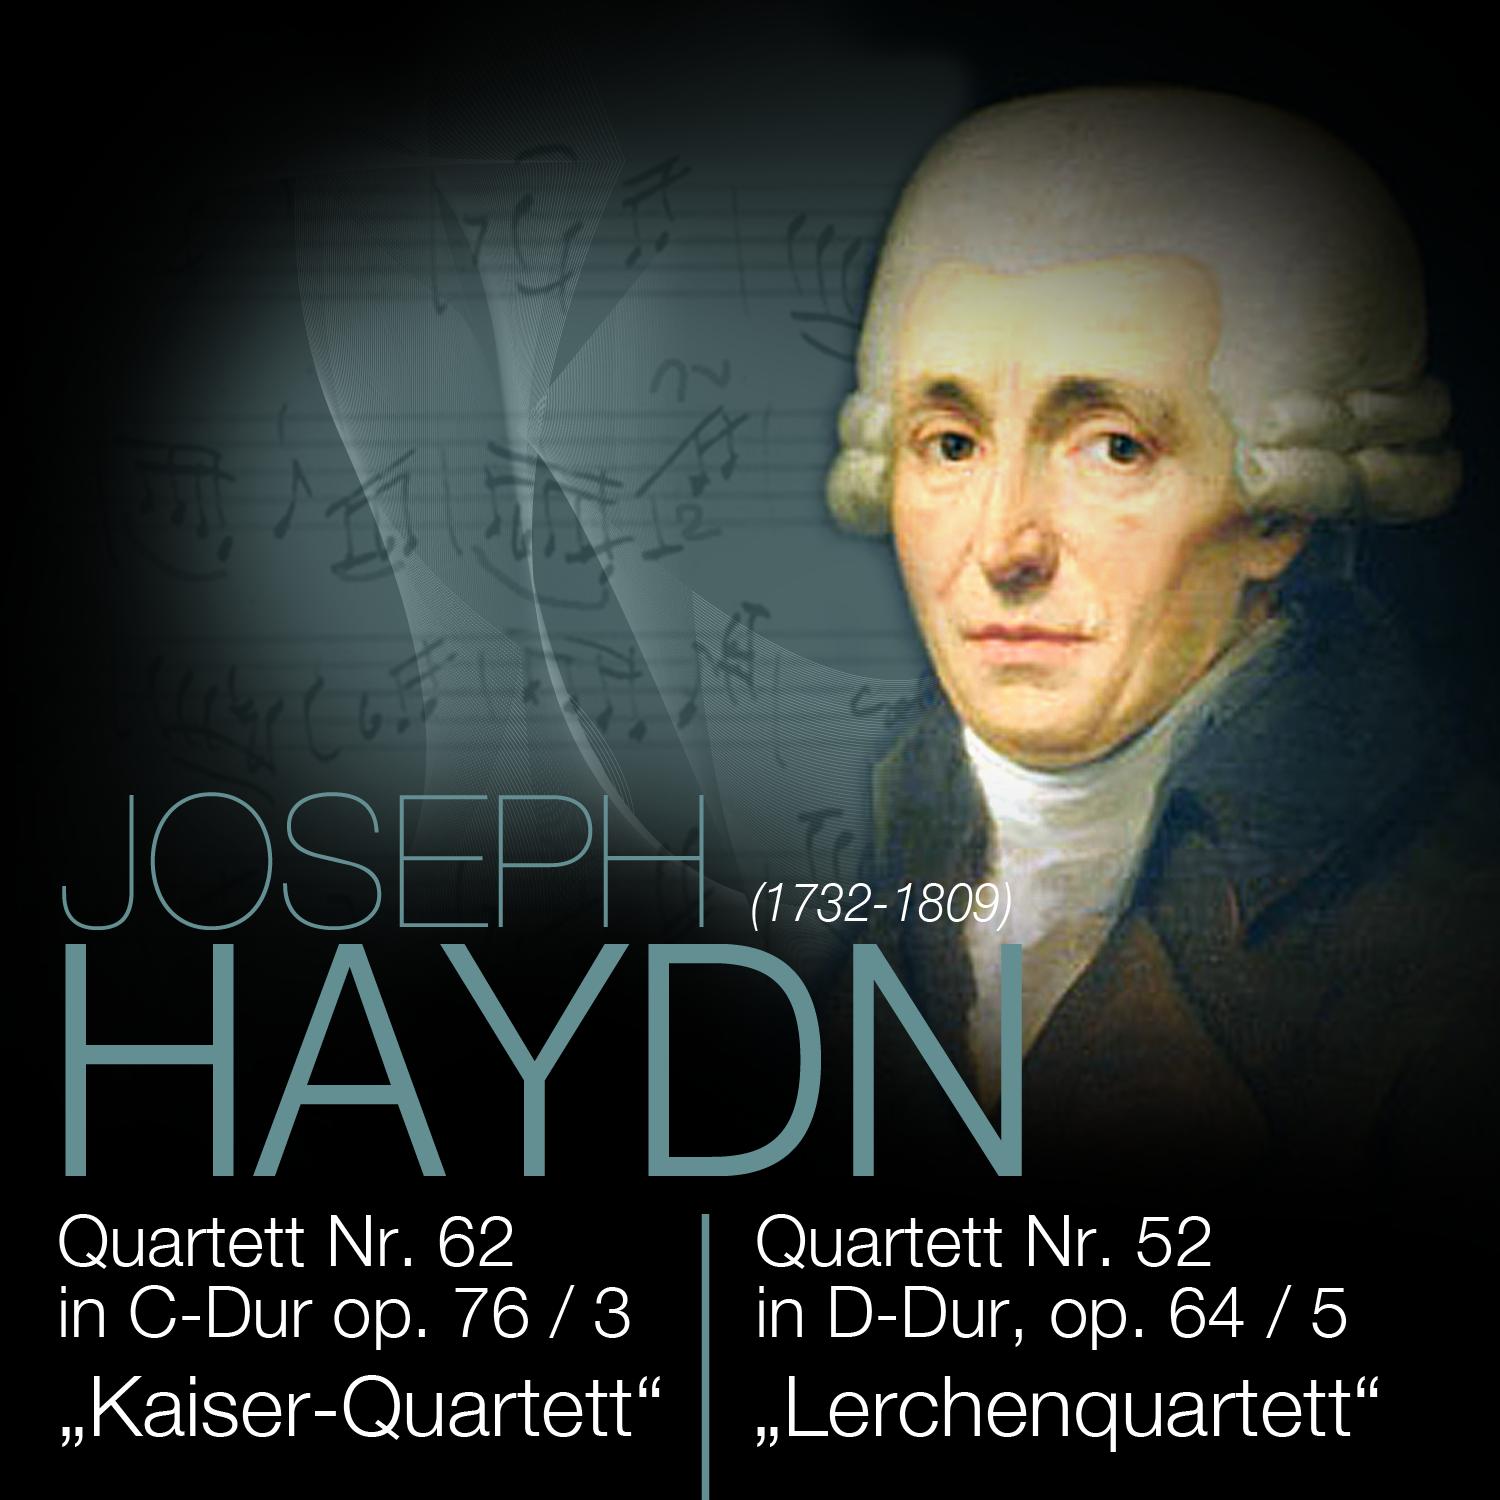 Quartett Nr. 62 in C-Dur op. 76 / 3, Poco Adagio. Cantabile - Vr. I-IV